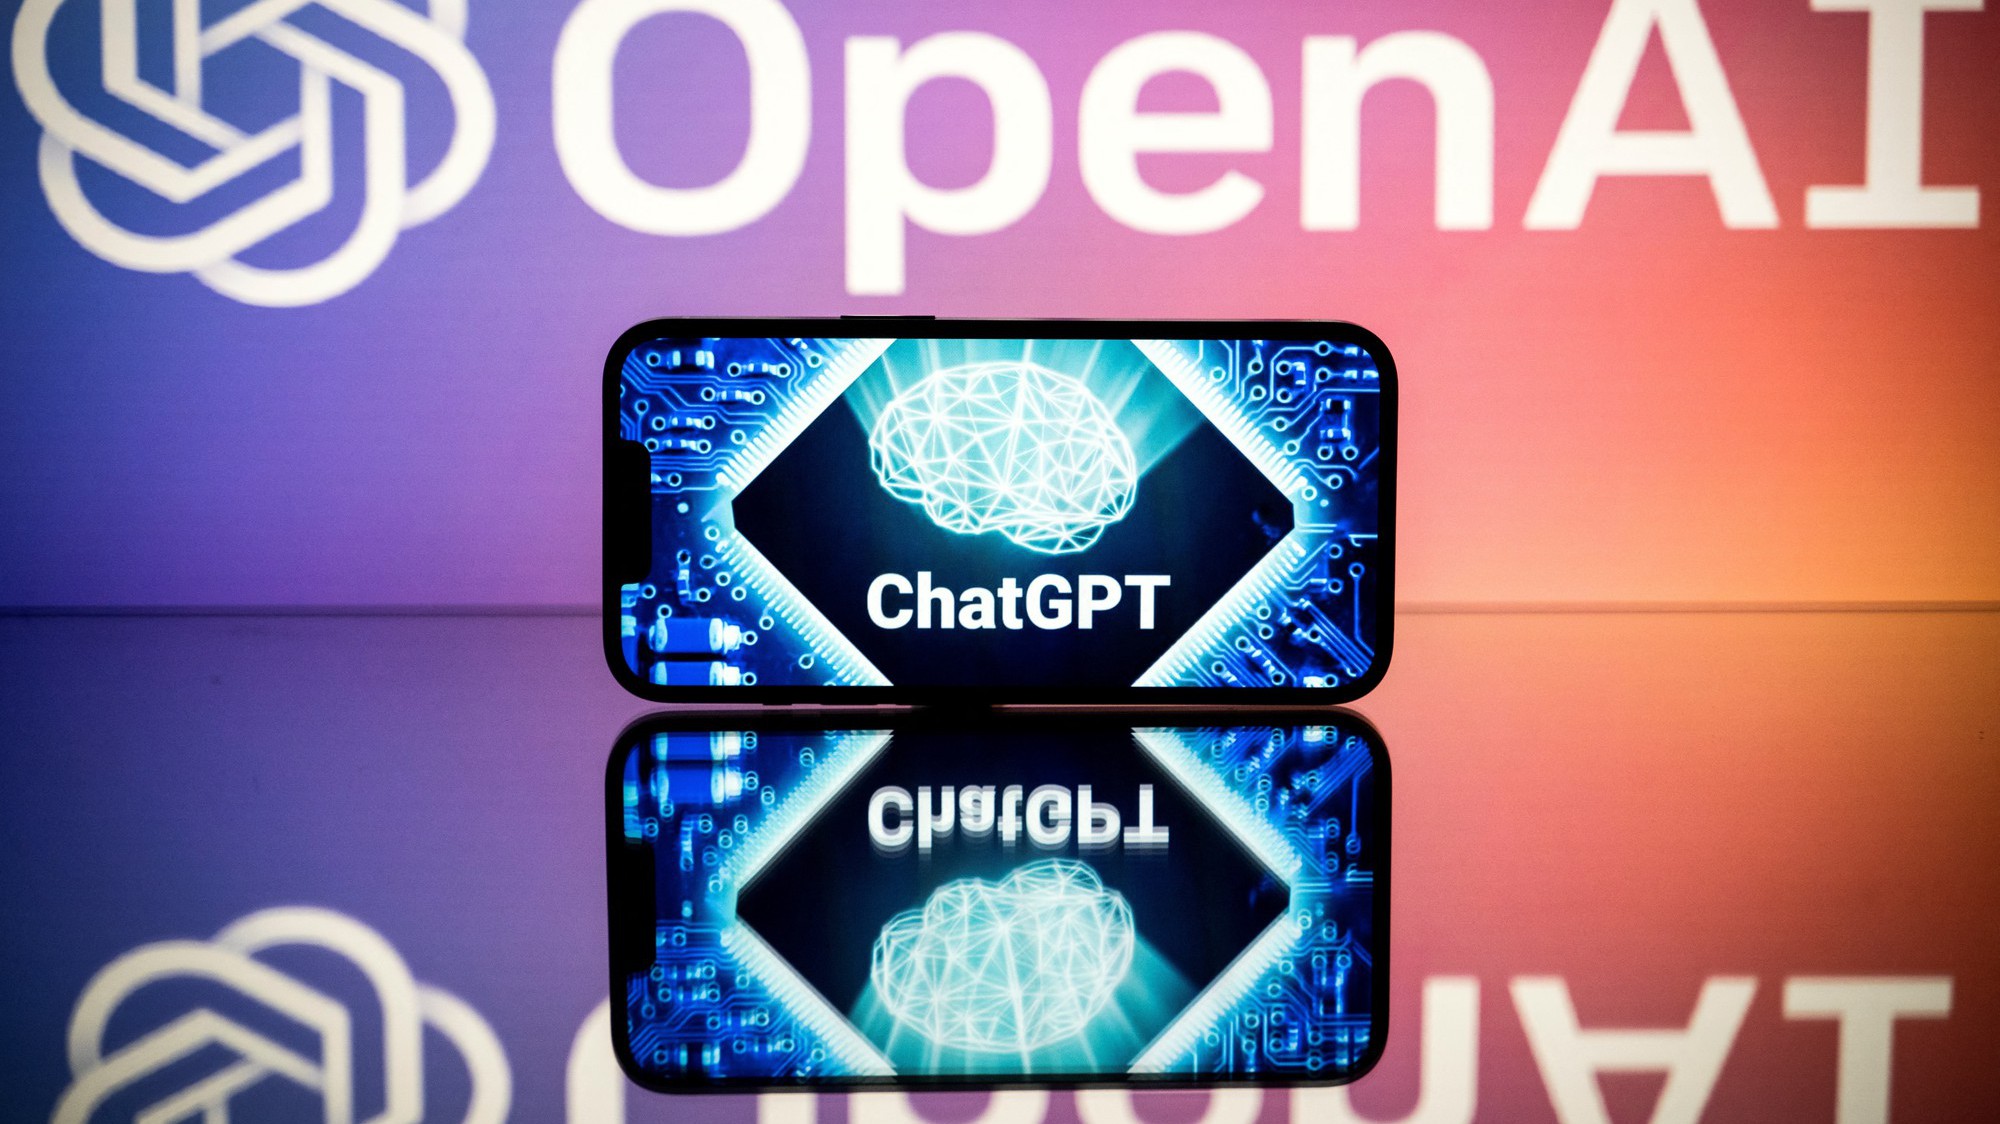 OpenAI có nguy cơ bị kiện vì thông tin sai lệch trên ChatGPT